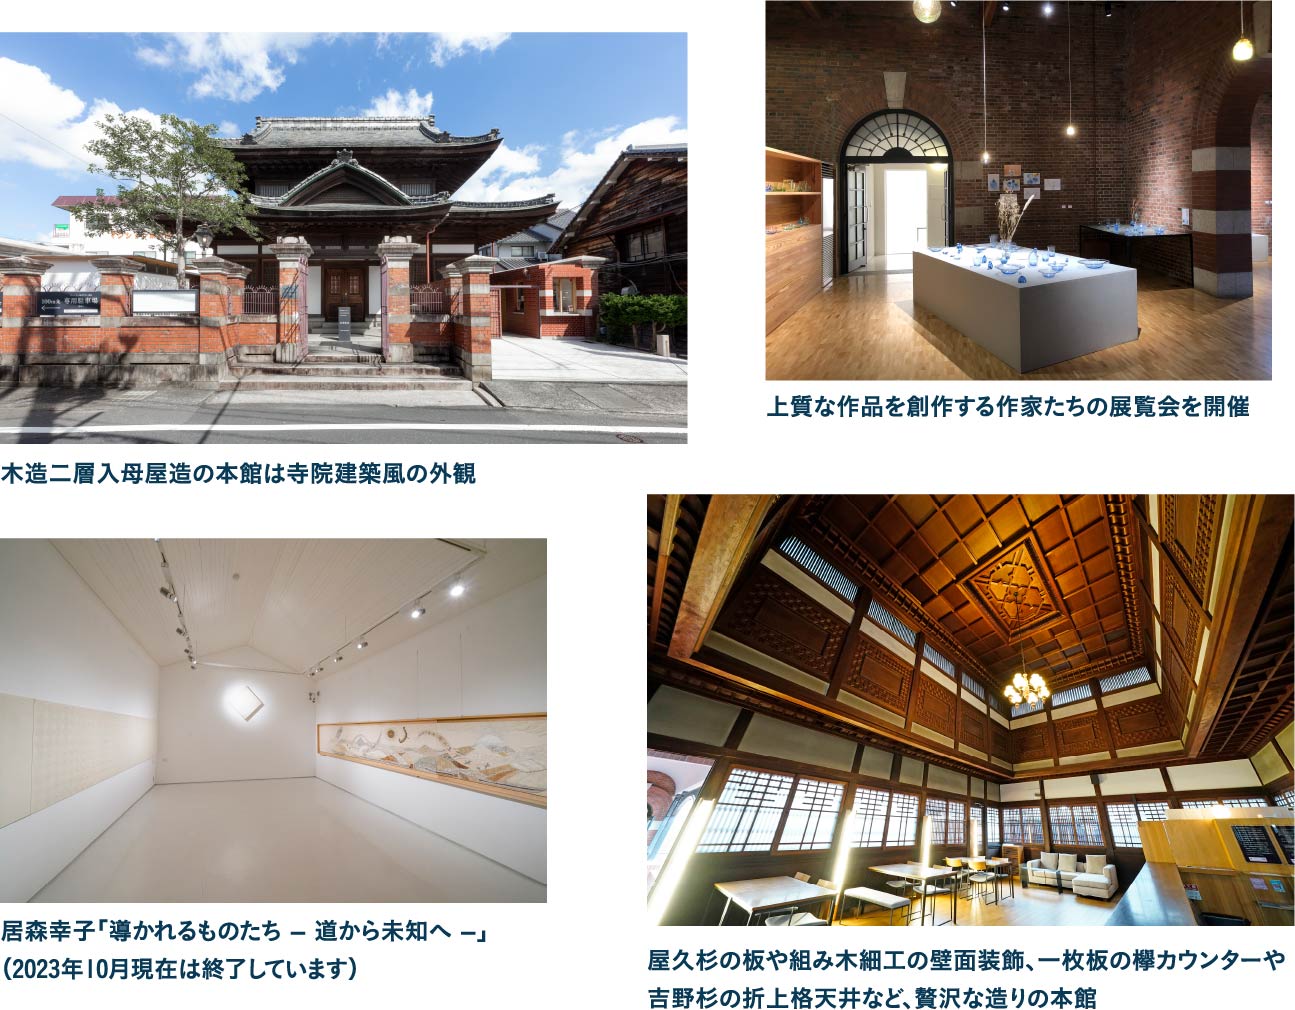 100年を超える歴史的建造物の PORT ART&DESIGN TSUYAMA